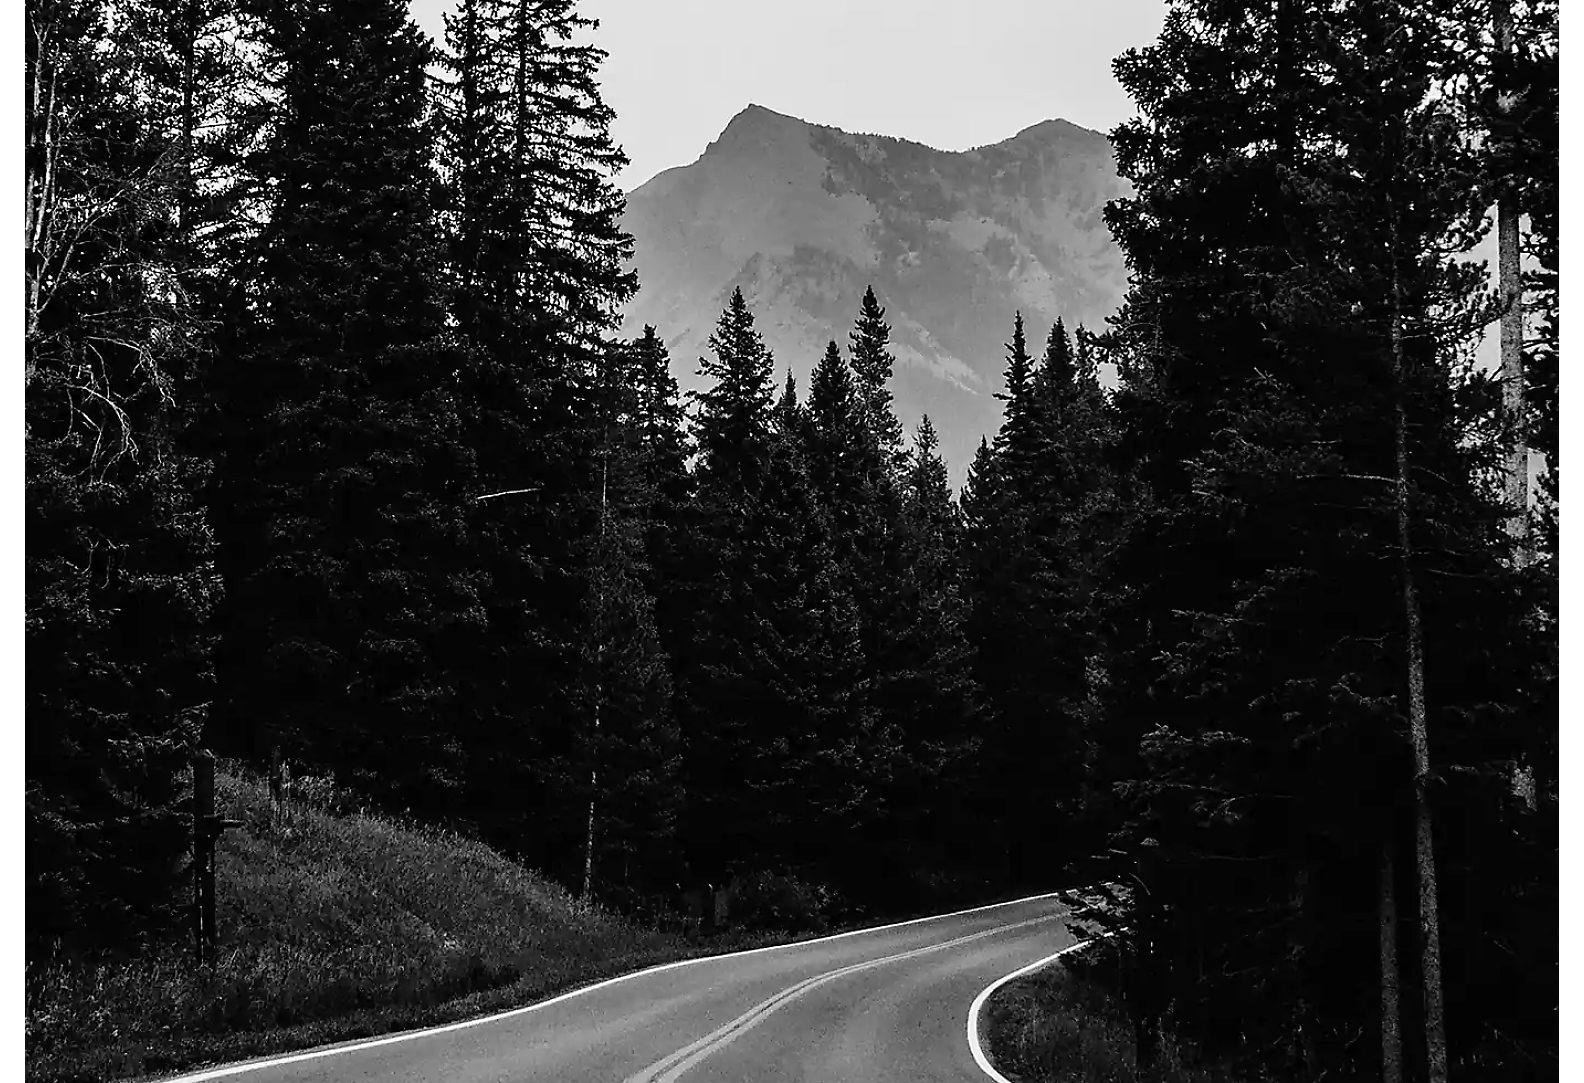 Kétsávos út az erdőn keresztül, hegycsúccsal a háttérben, fekete-fehérben.